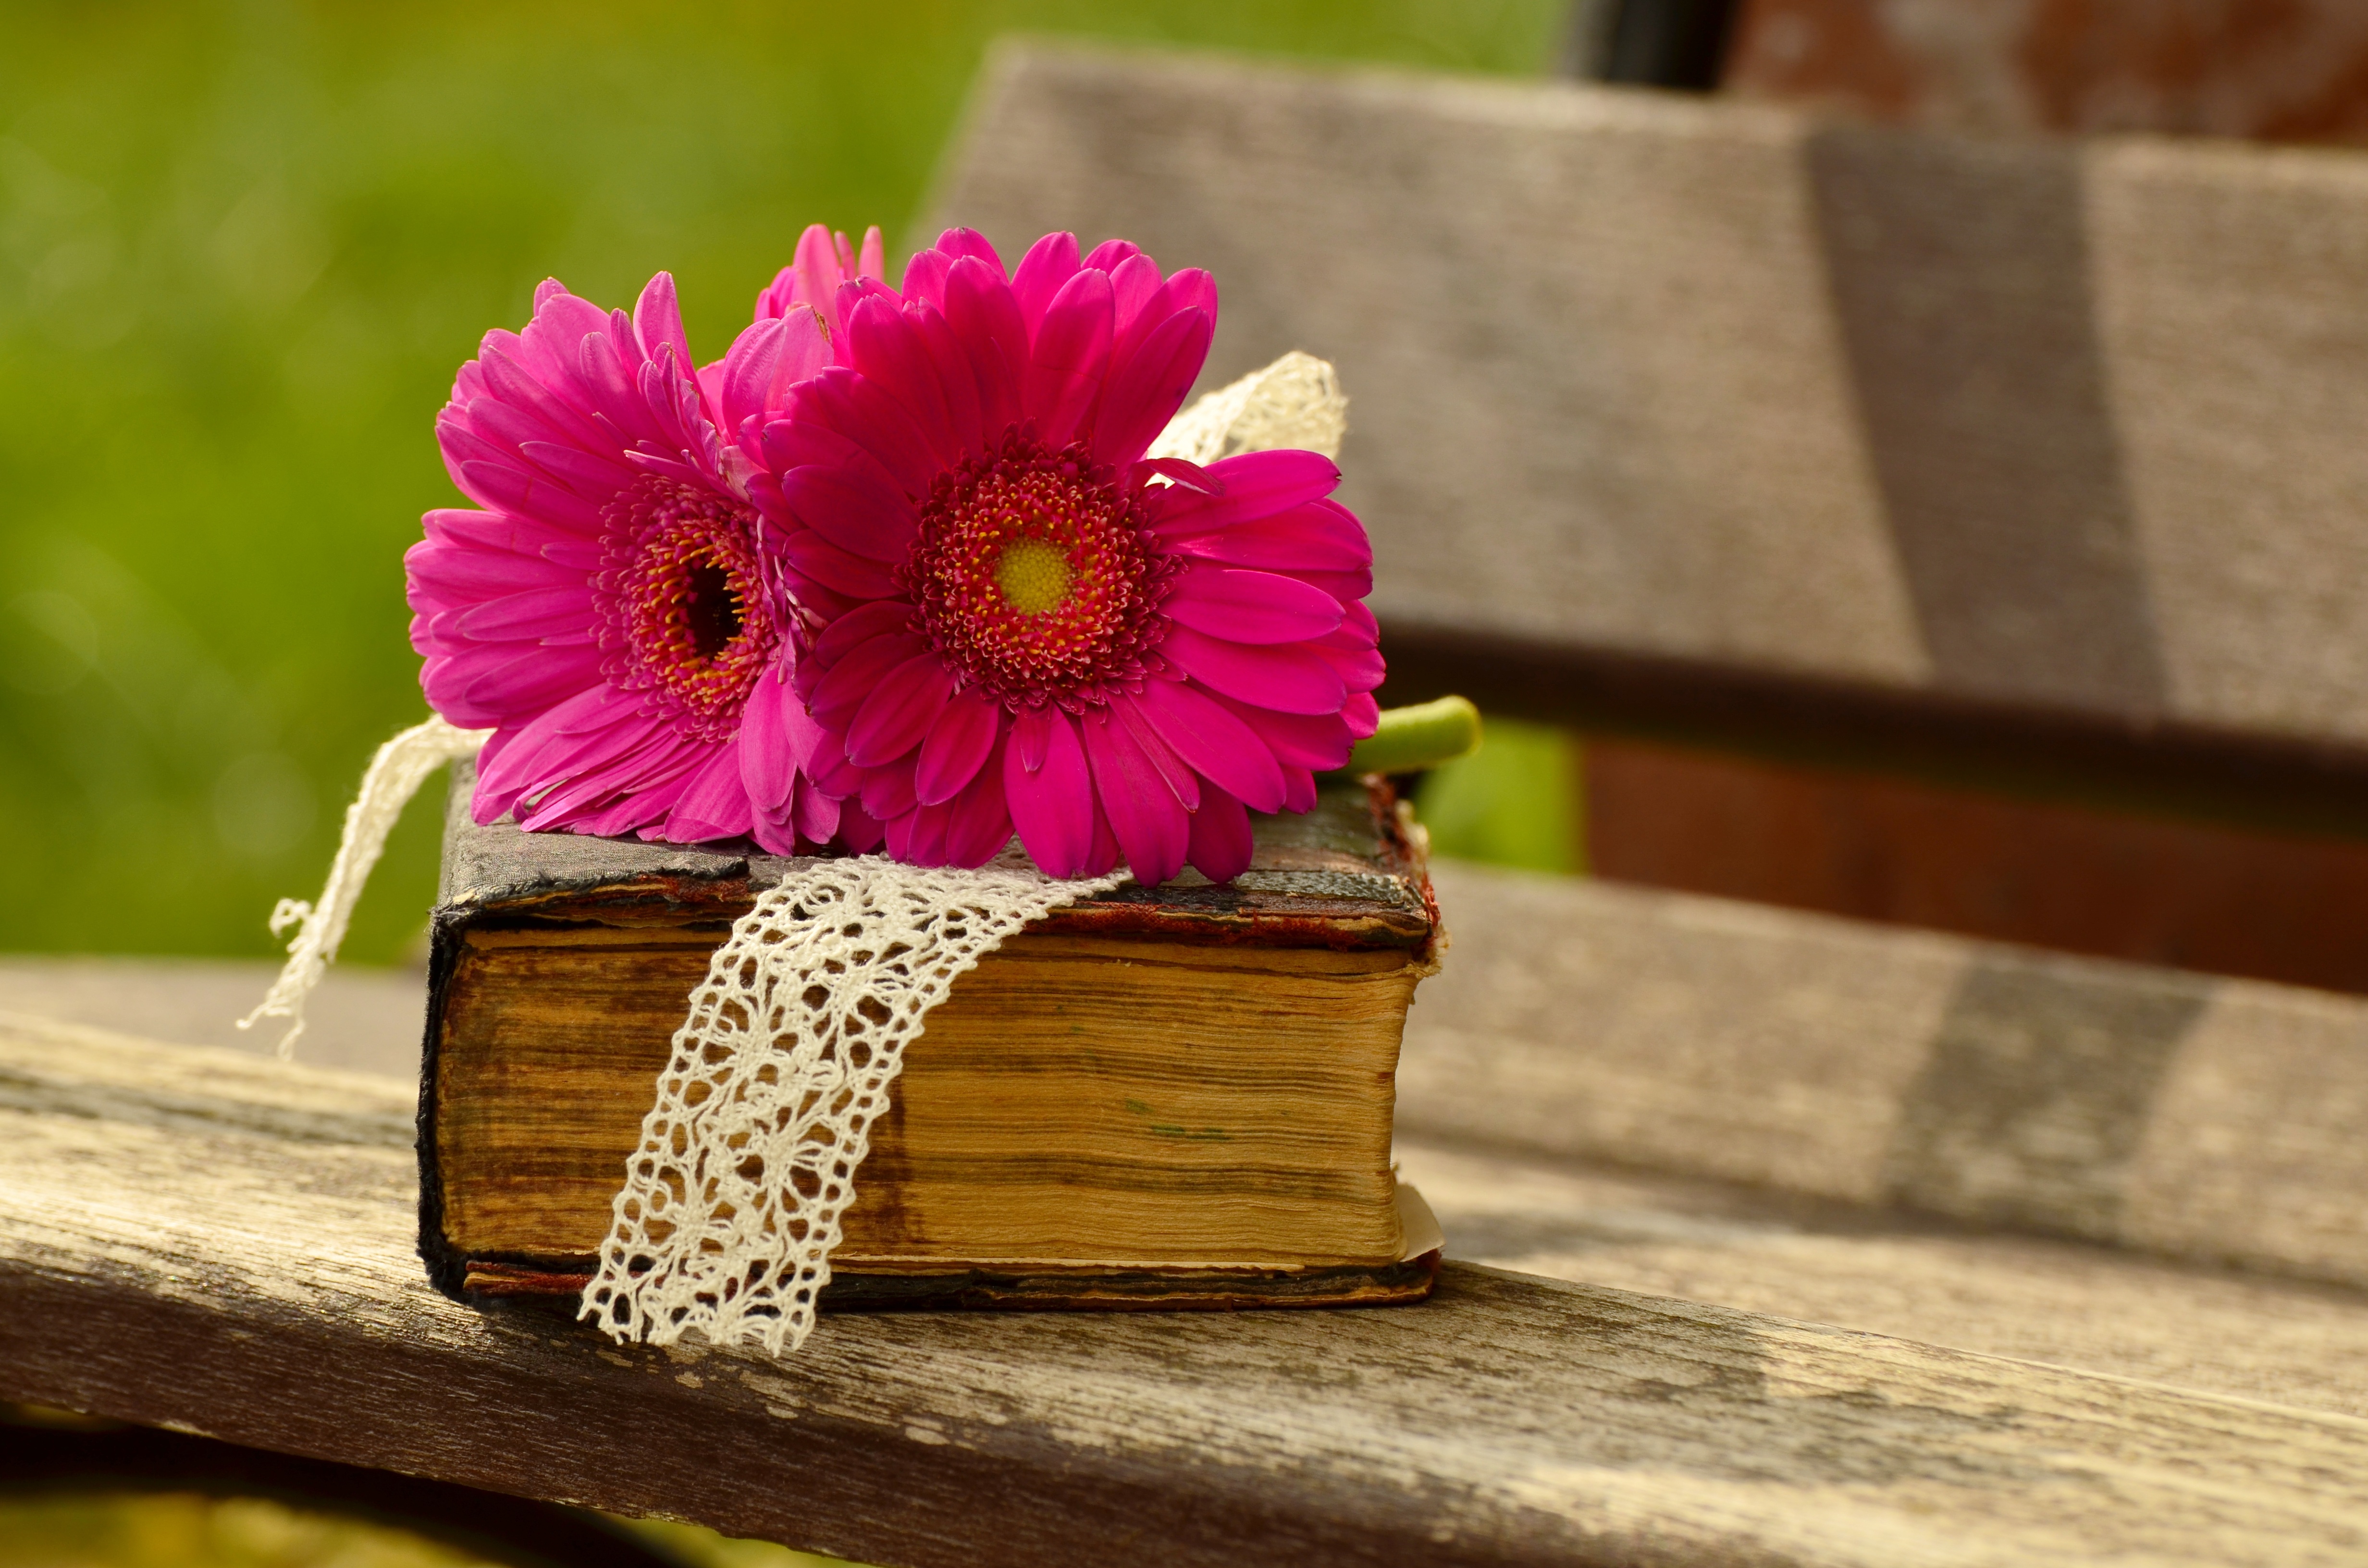 Фото цветок, книга, прочитать, растение, древесина, лепесток, цветения, весна, отдохнуть, романтический, желтый, розовый, флора, библия, банк - бесплатные картинки на Fonwall